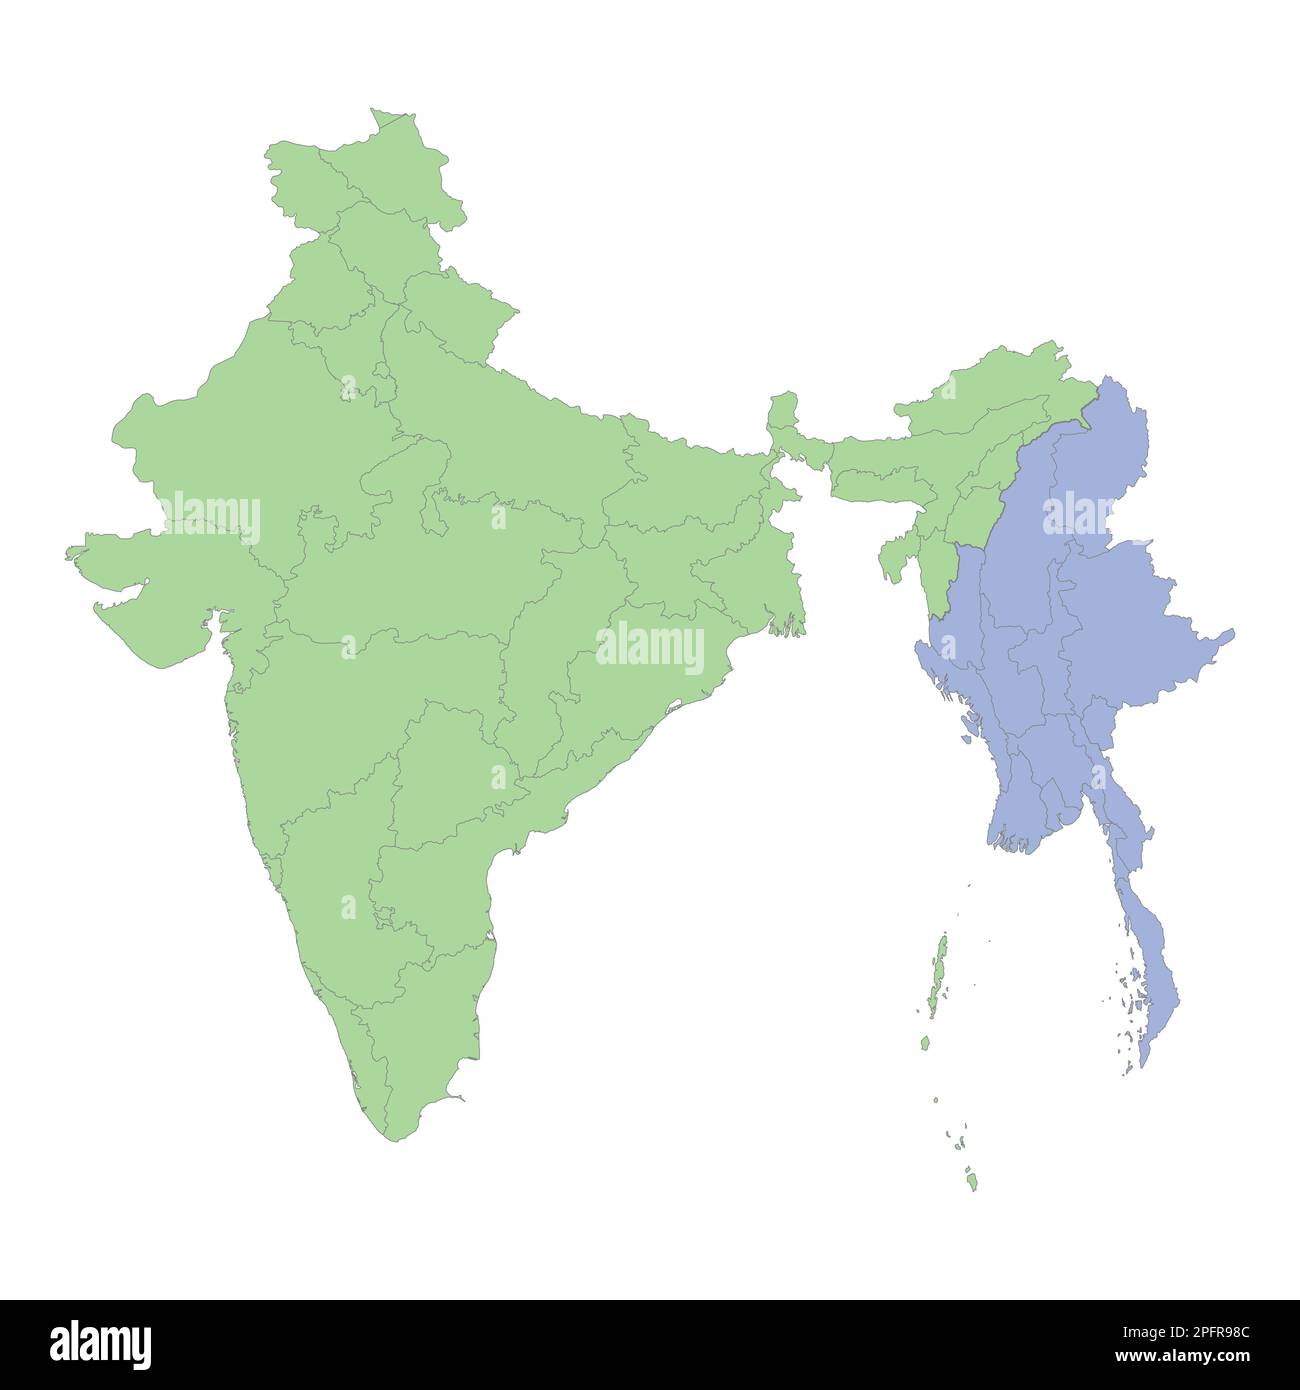 Mappa politica di alta qualità di India e Myanmar con i confini delle regioni o province. Illustrazione vettoriale Illustrazione Vettoriale